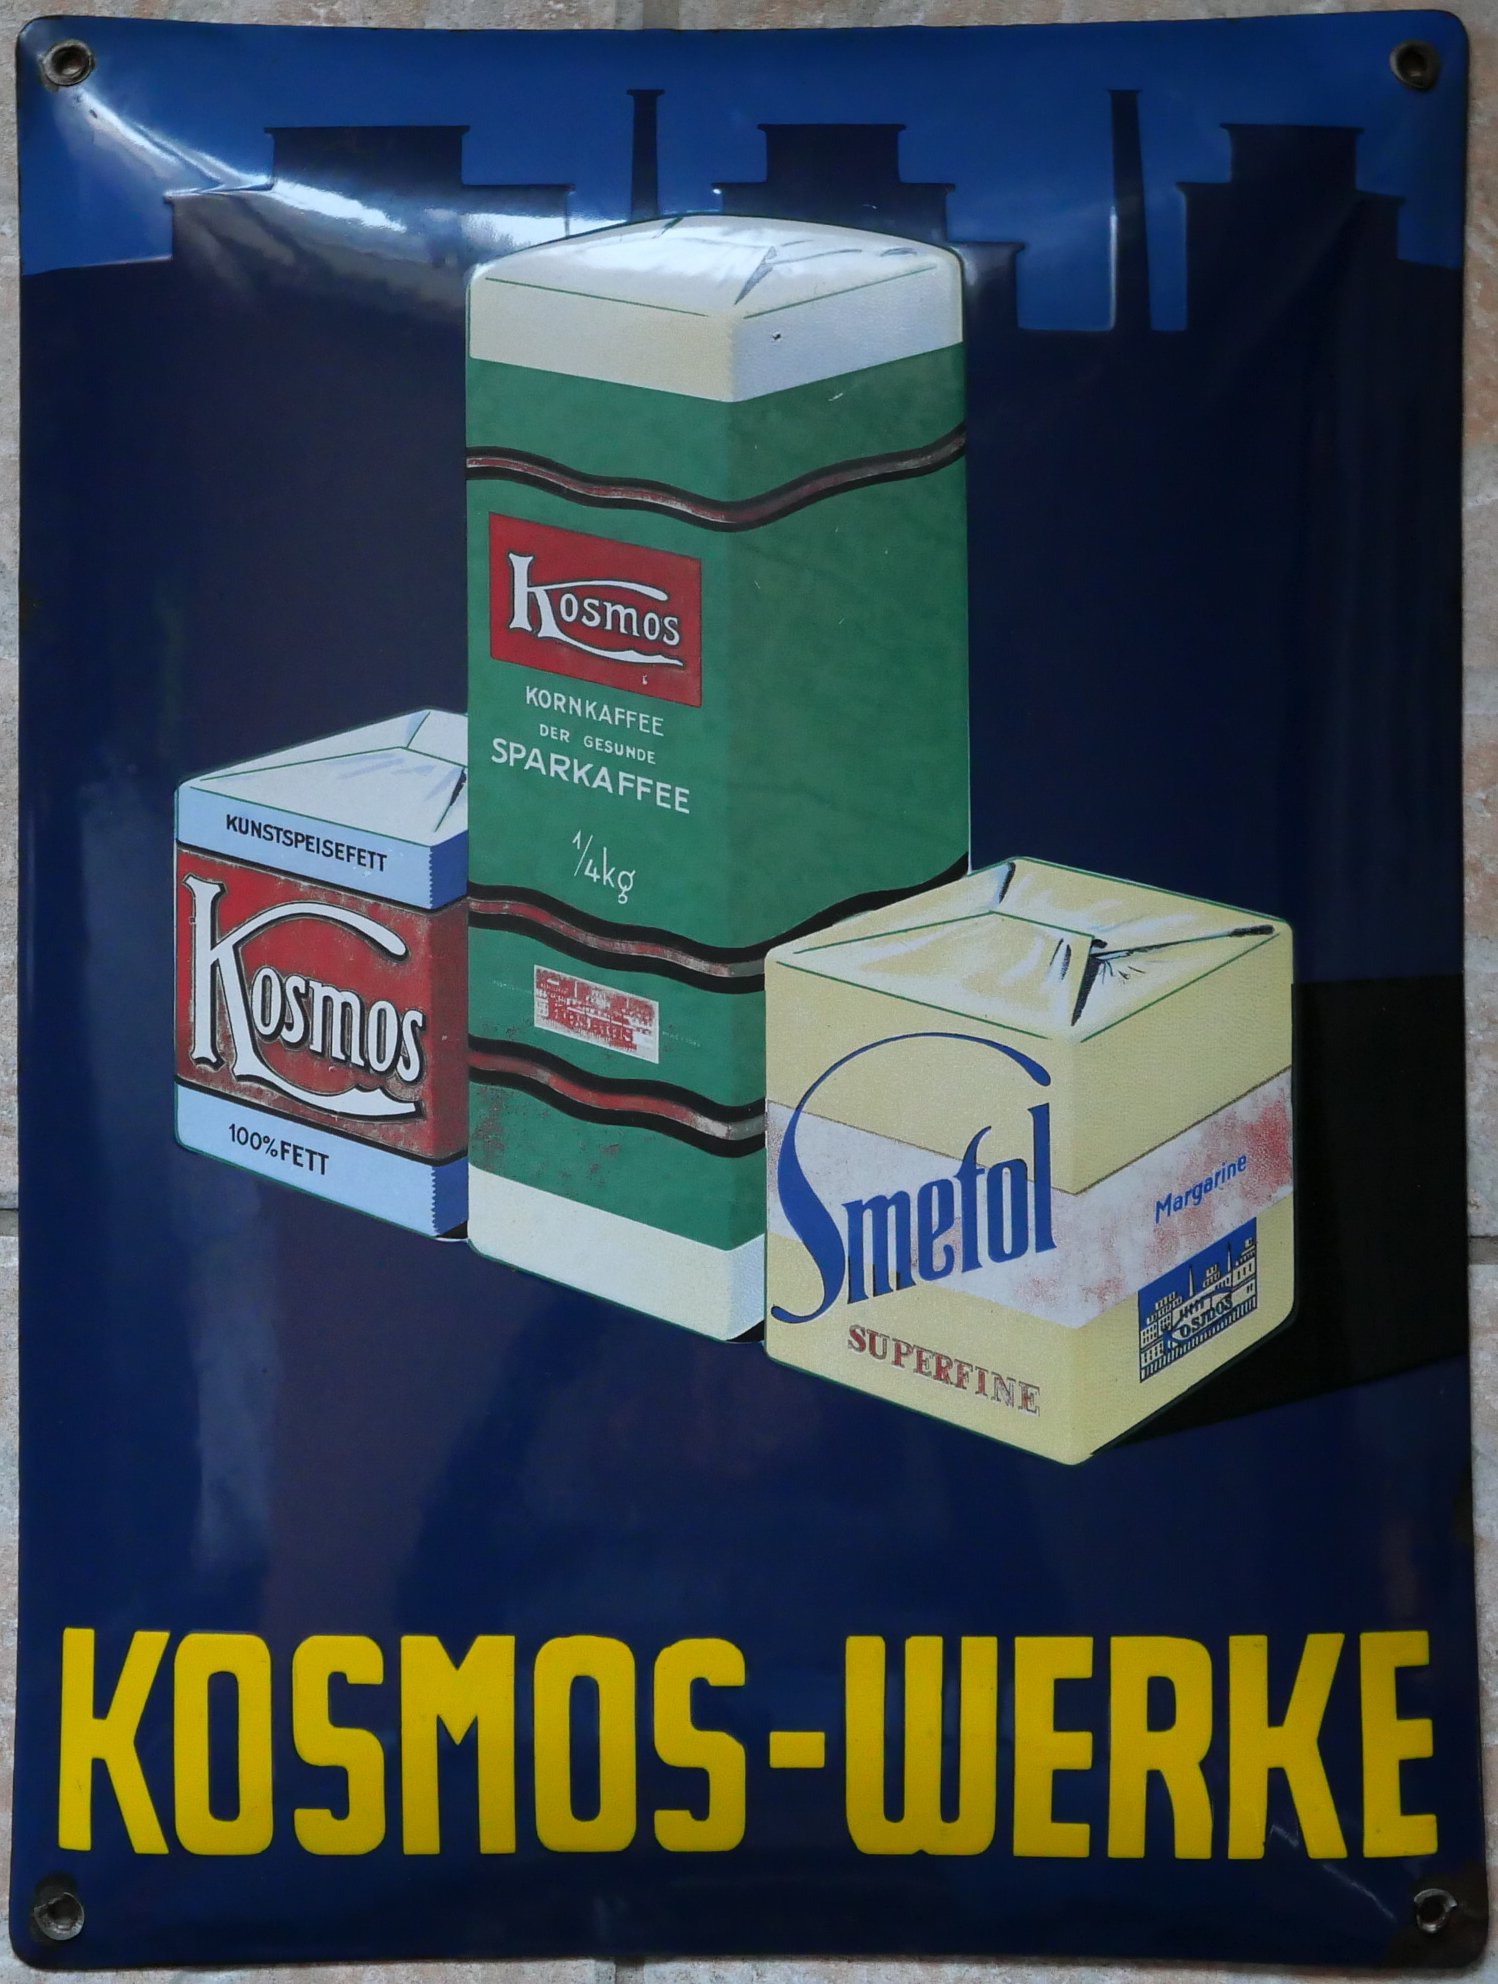 Kosmos-Werke